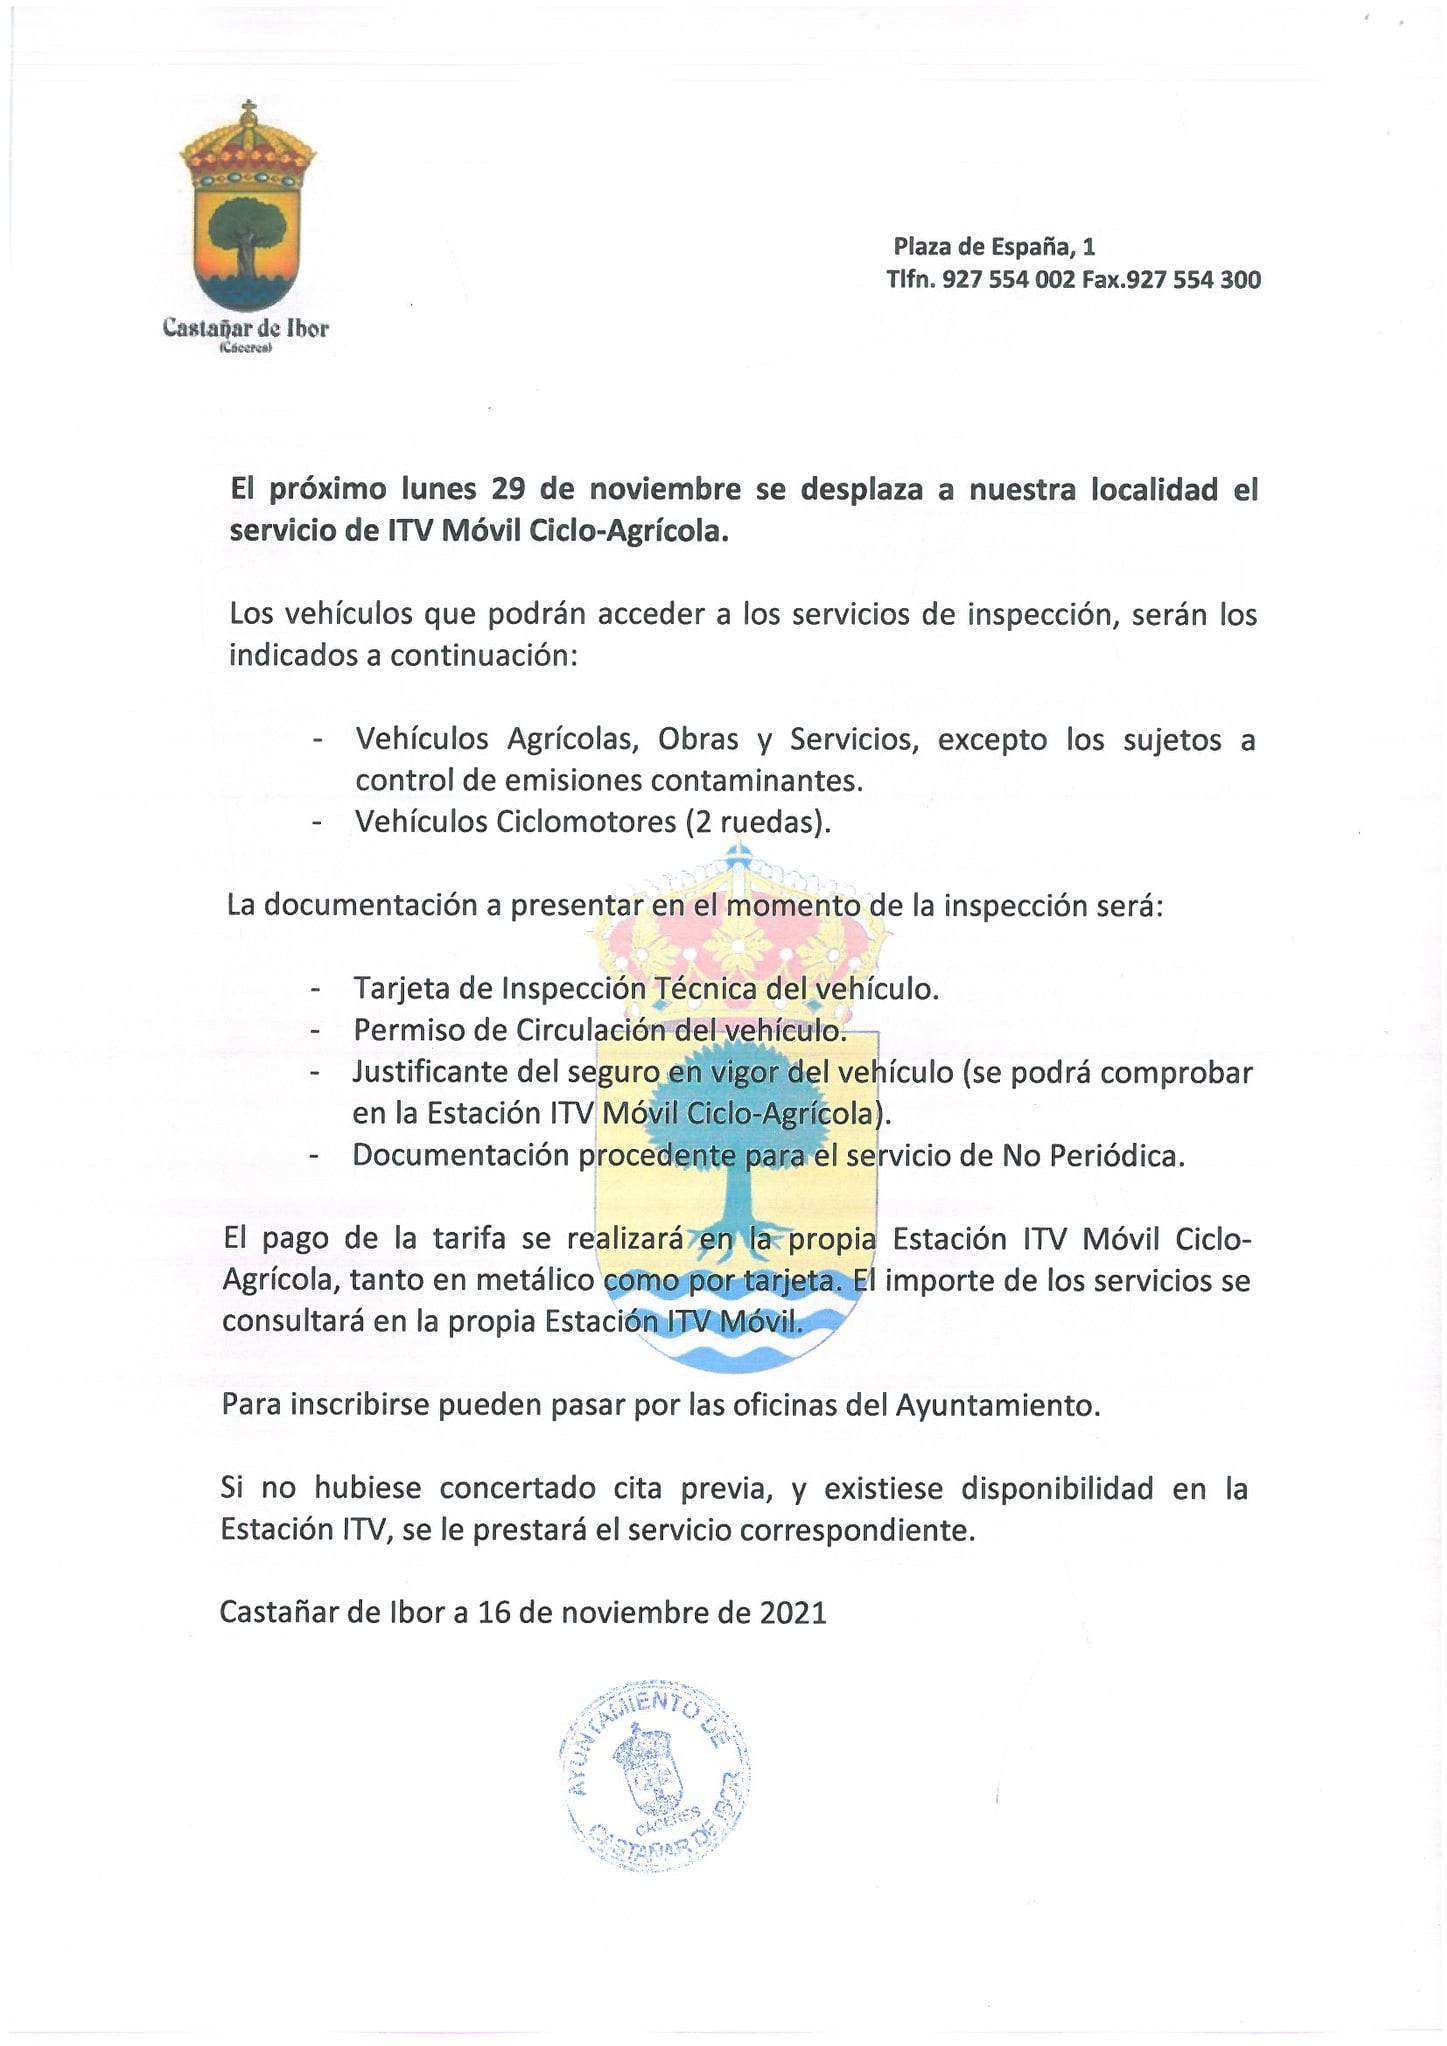 Desplazamiento de ITV móvil ciclo-agrícola (2021) - Castañar de Ibor (Cáceres)